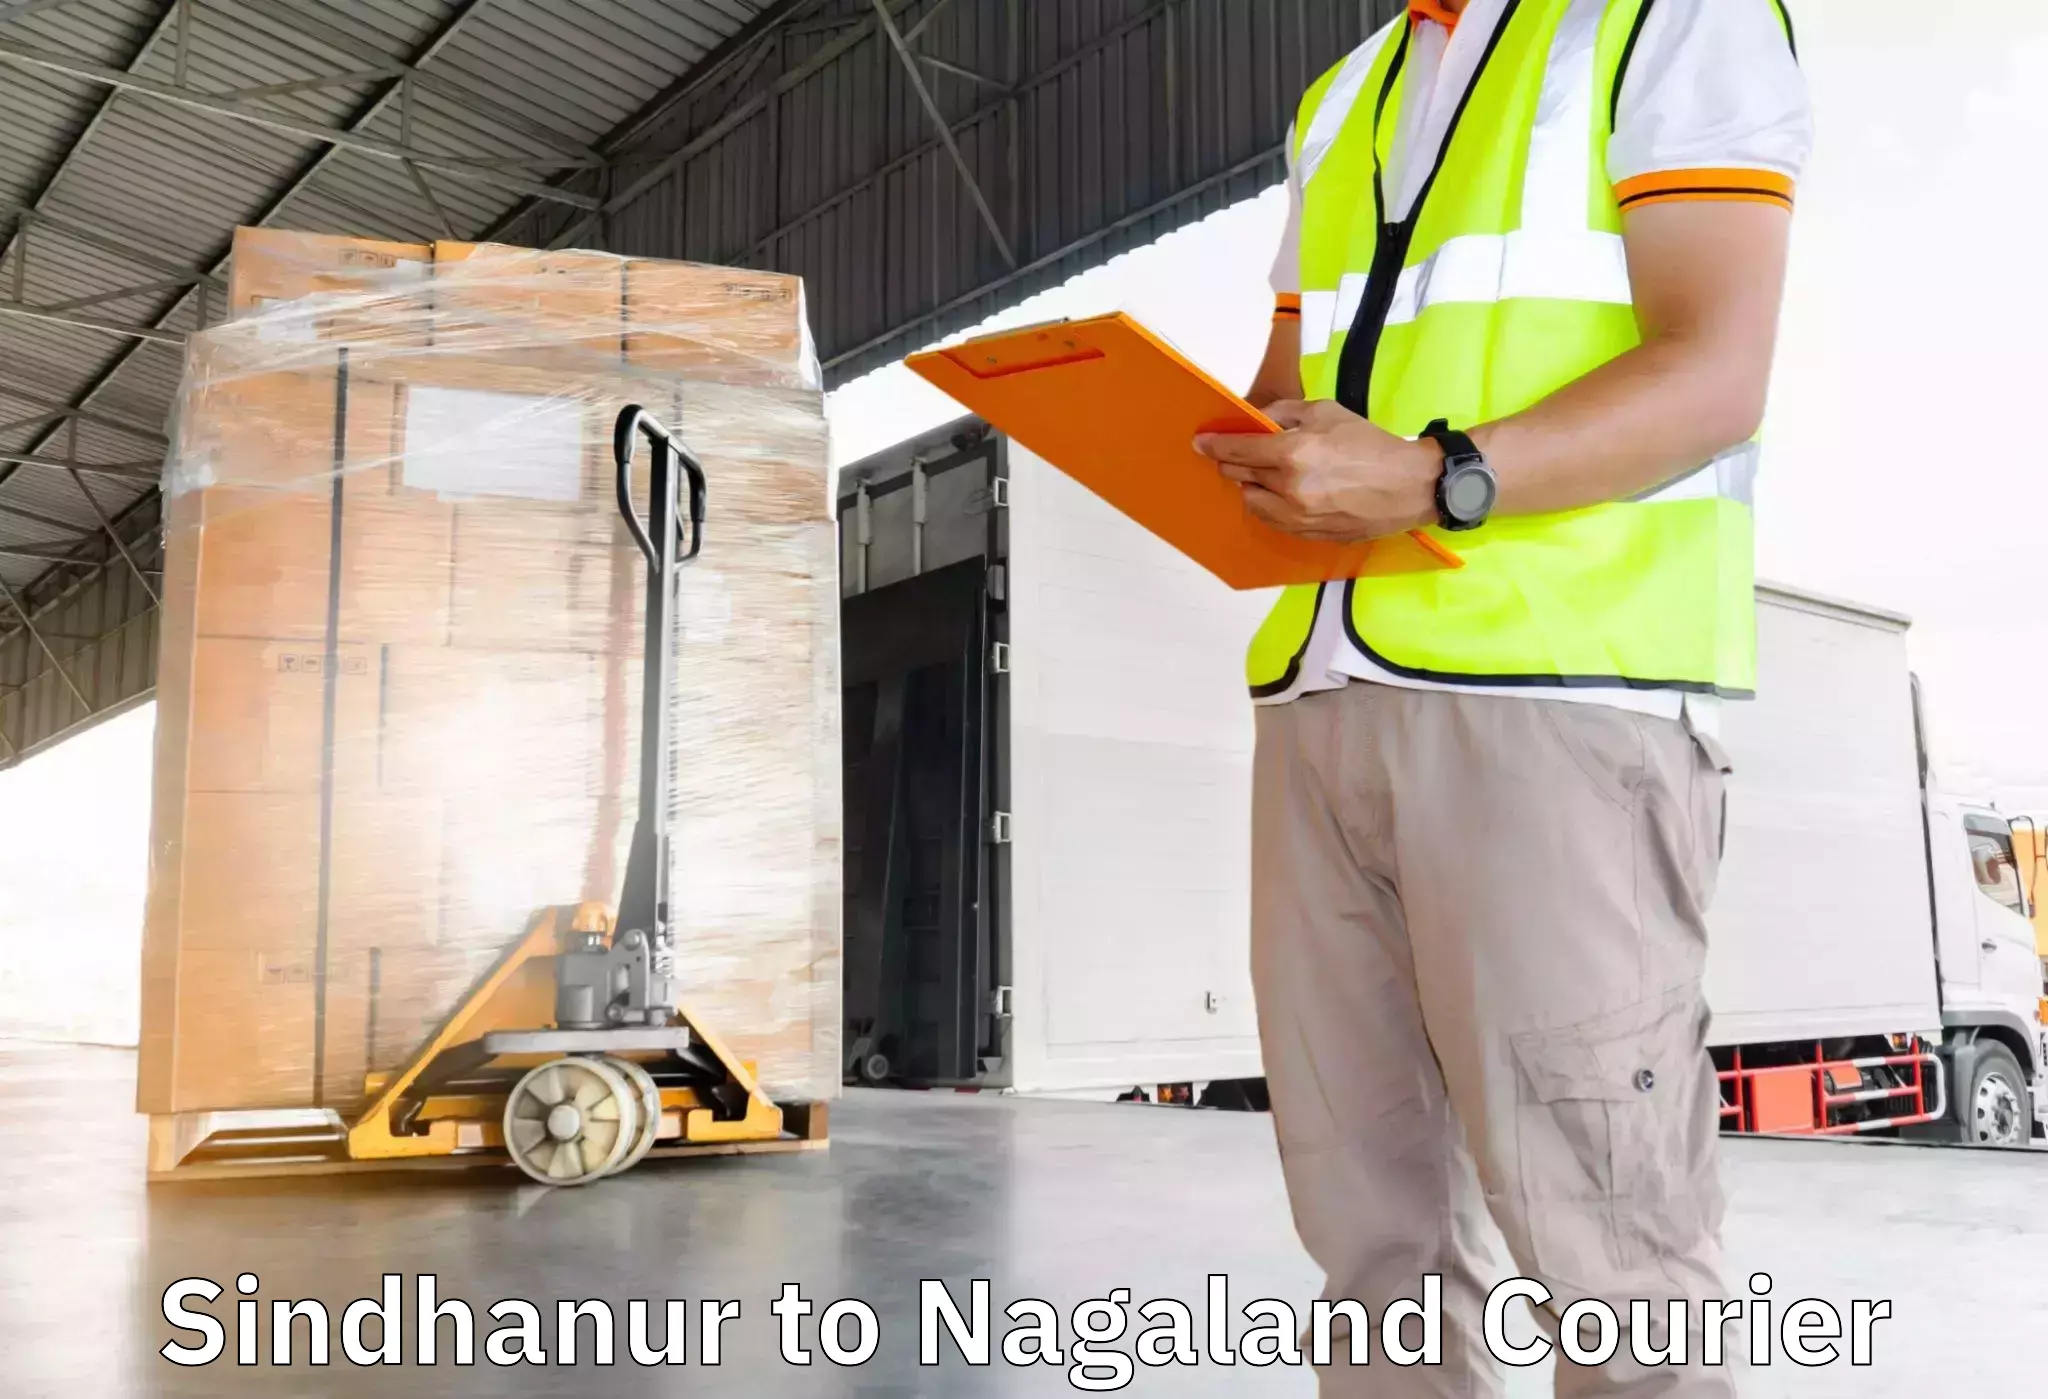 Furniture moving experts Sindhanur to Tuensang